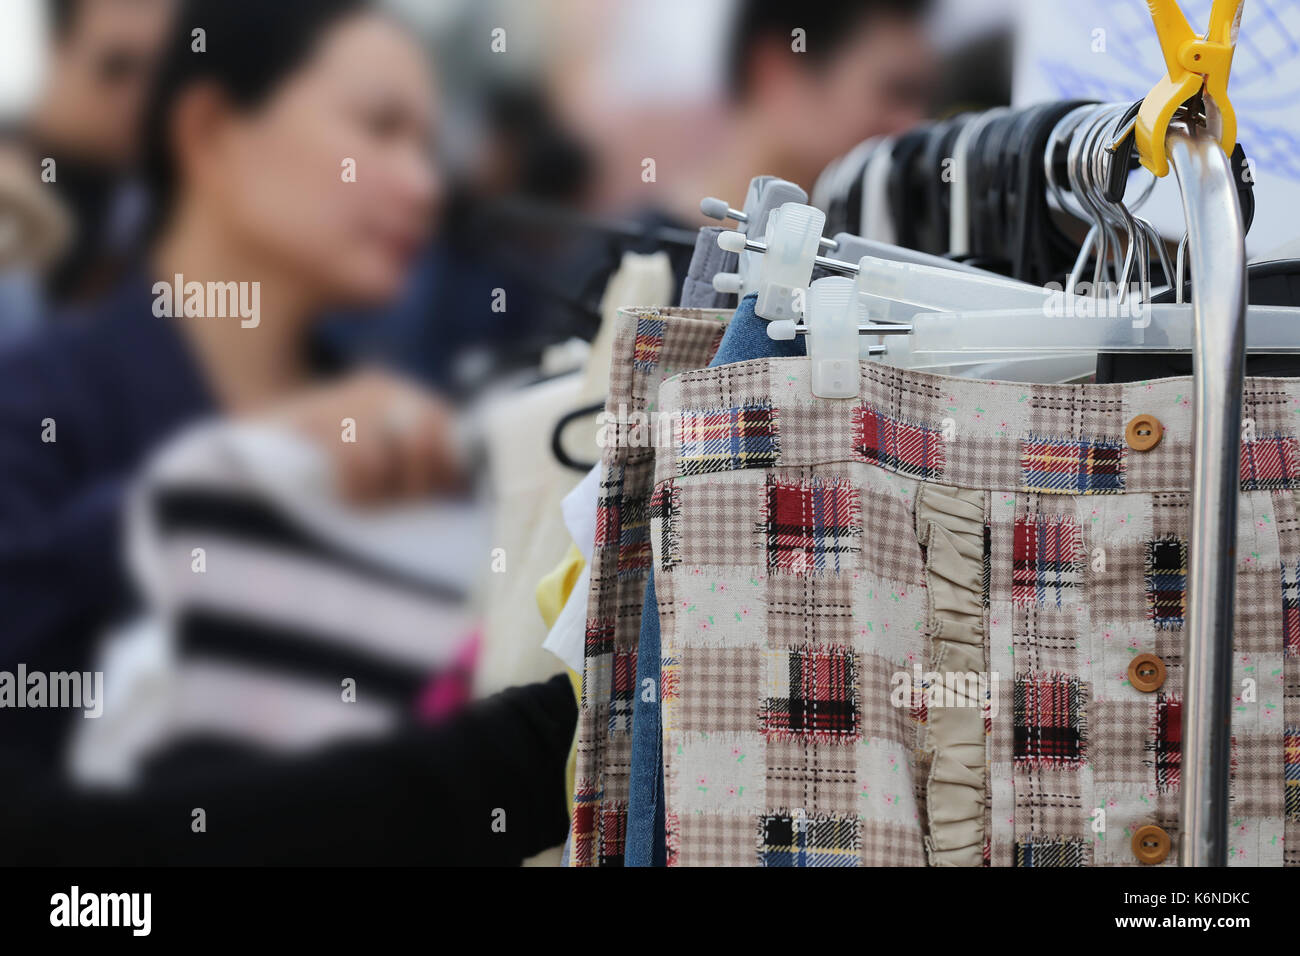 Fashion Hosen auf Kleiderbügel hängend an der Wäscheleine, Konzept des Einkaufs für Verschleiß Zubehör. Stockfoto